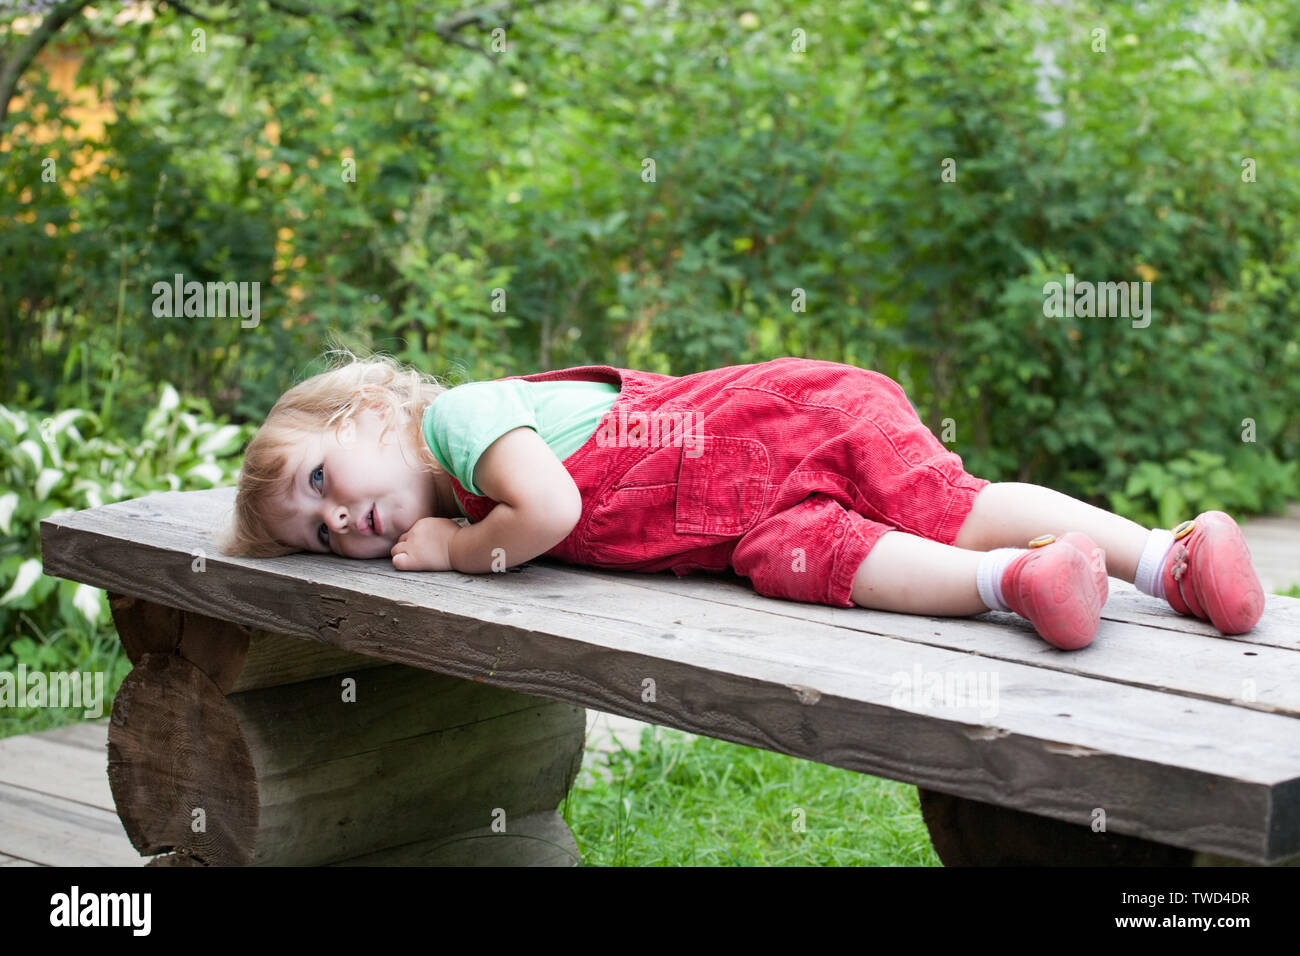 Petit enfant pensive caucasian girl lying on outdoor banc en bois Banque D'Images